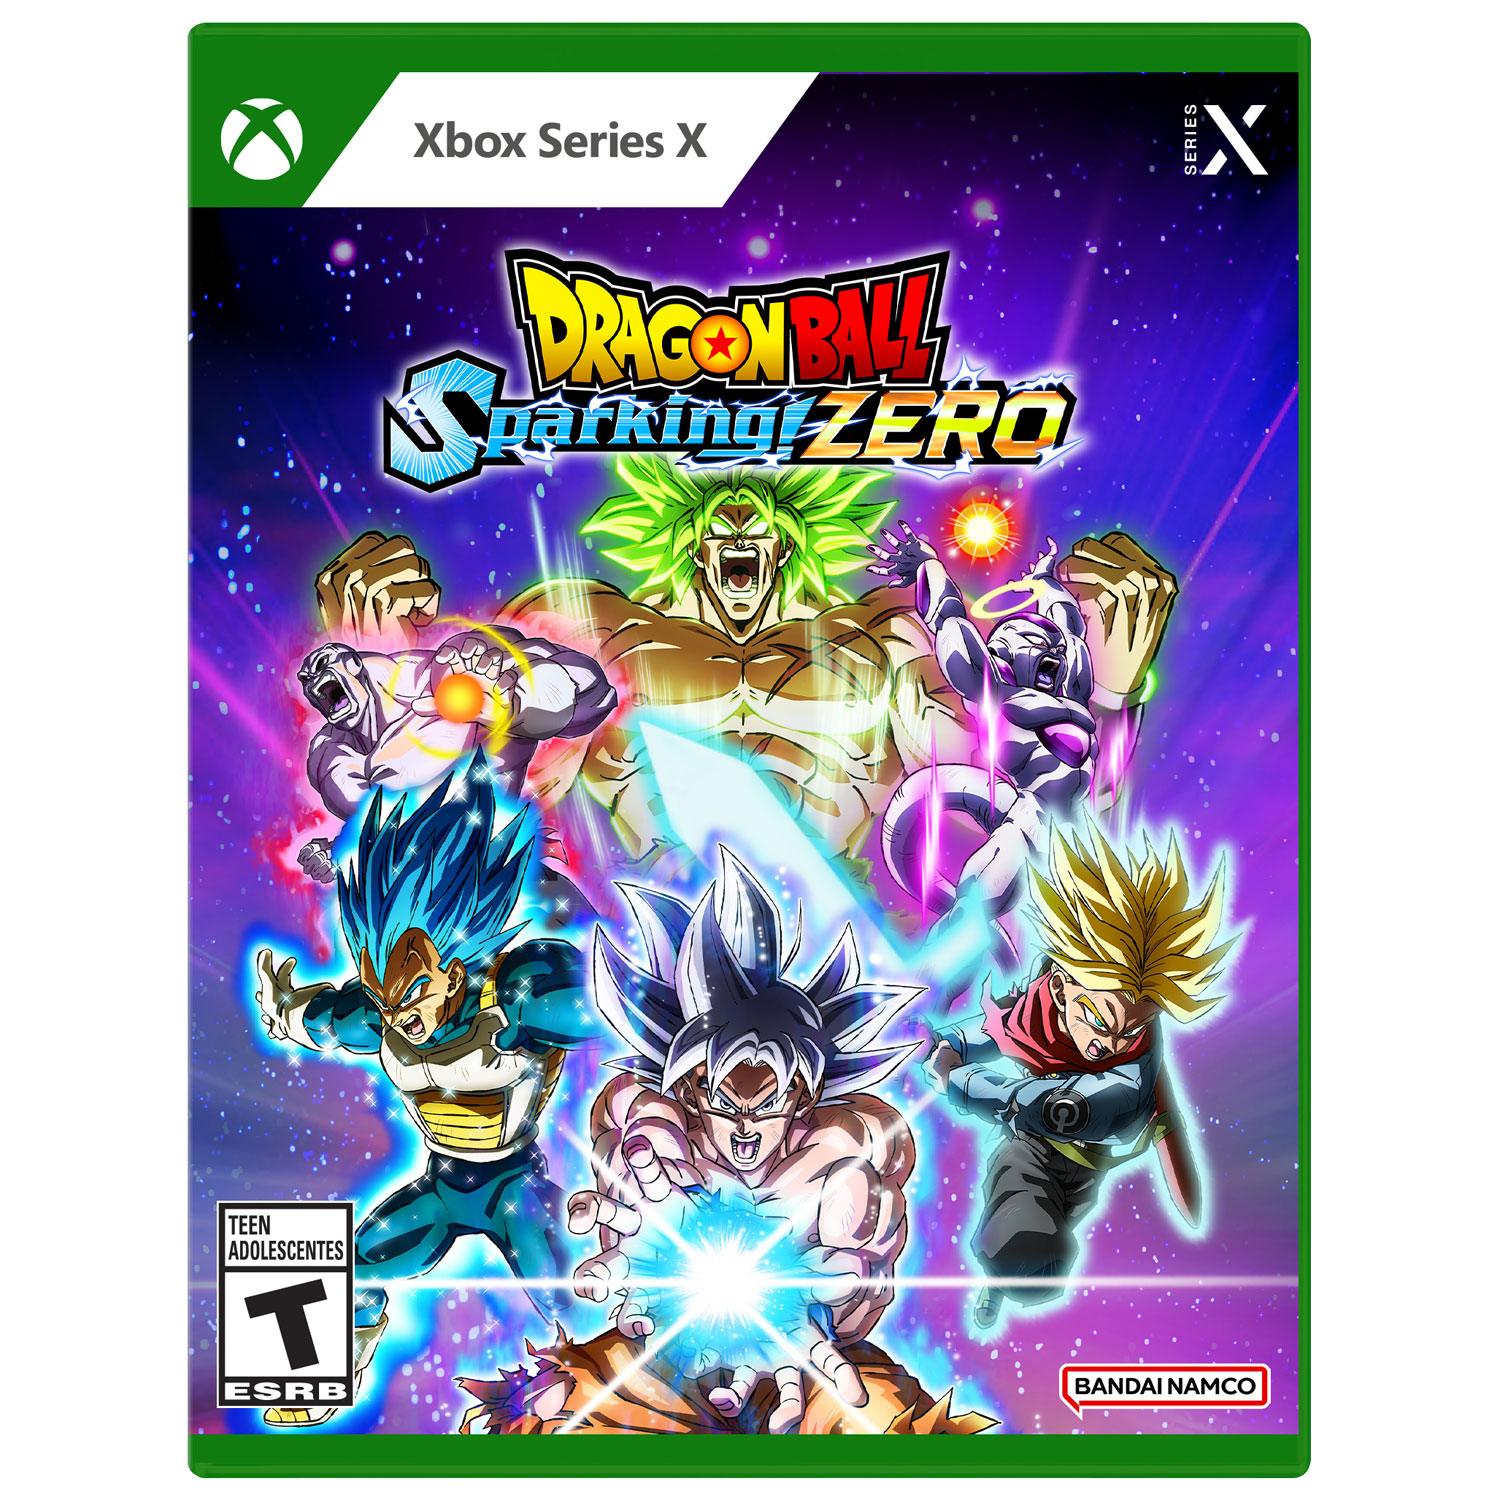 Dragon Ball Sparking Zero (Xbox Series X)